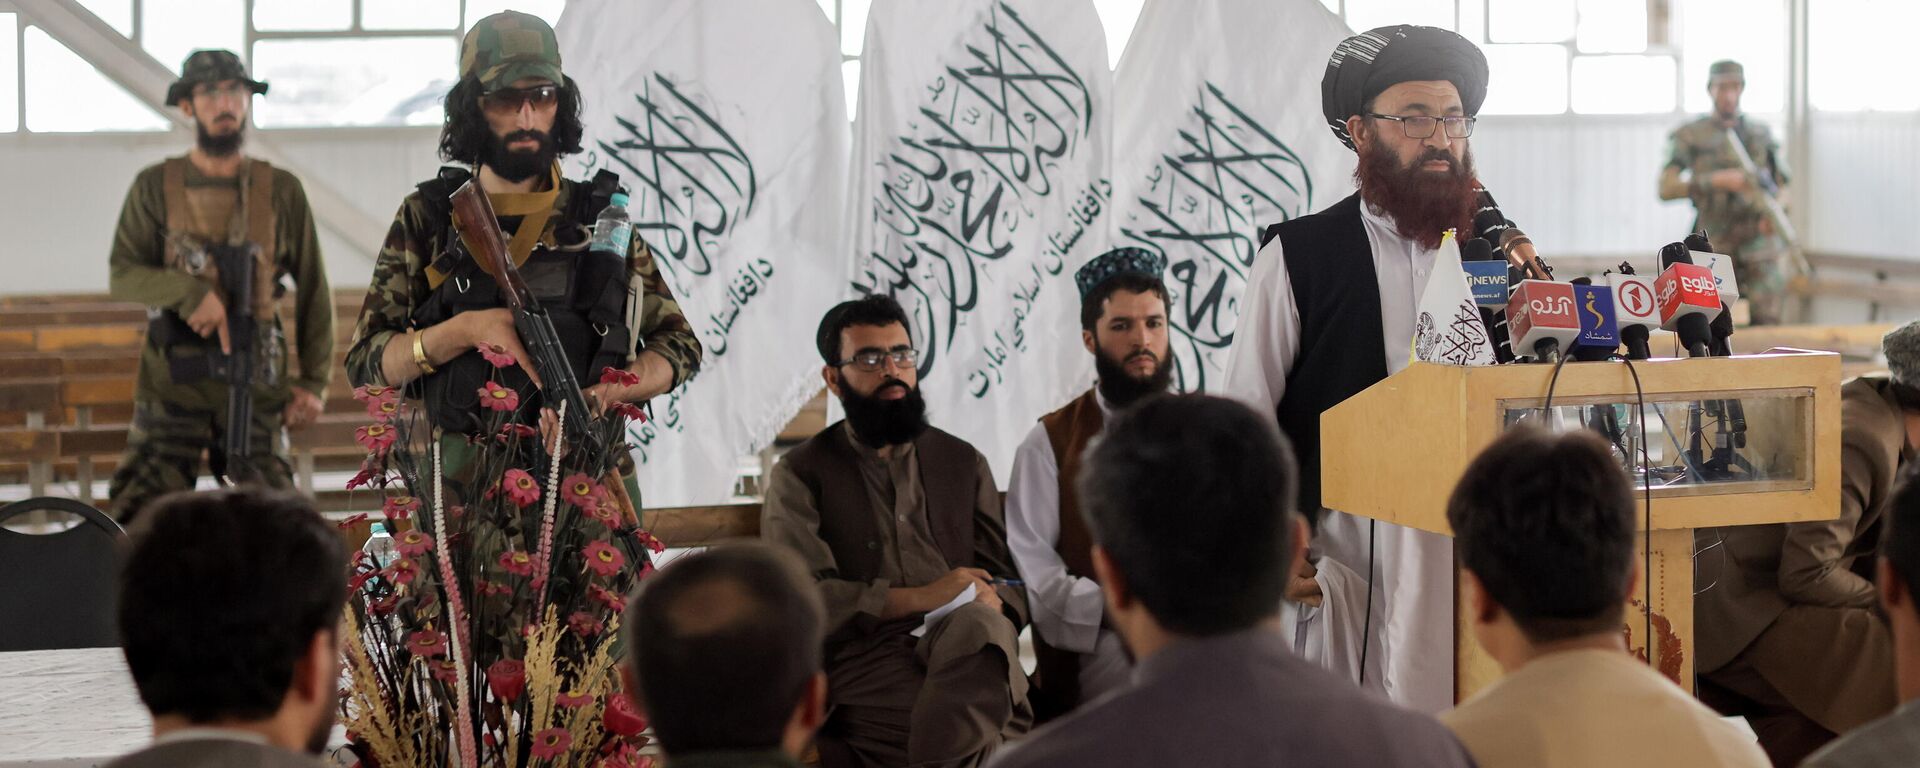 Funcionarios talibanes de Afganistán asisten a una rueda de prensa en la que anunciaron que volverán a emitir pasaportes a sus ciudadanos luego de meses de demoras que obstaculizaron los intentos de quienes intentaban huir del país, en Kabul, Afganistán, el 5 de octubre de 2021 - Sputnik Mundo, 1920, 15.10.2021